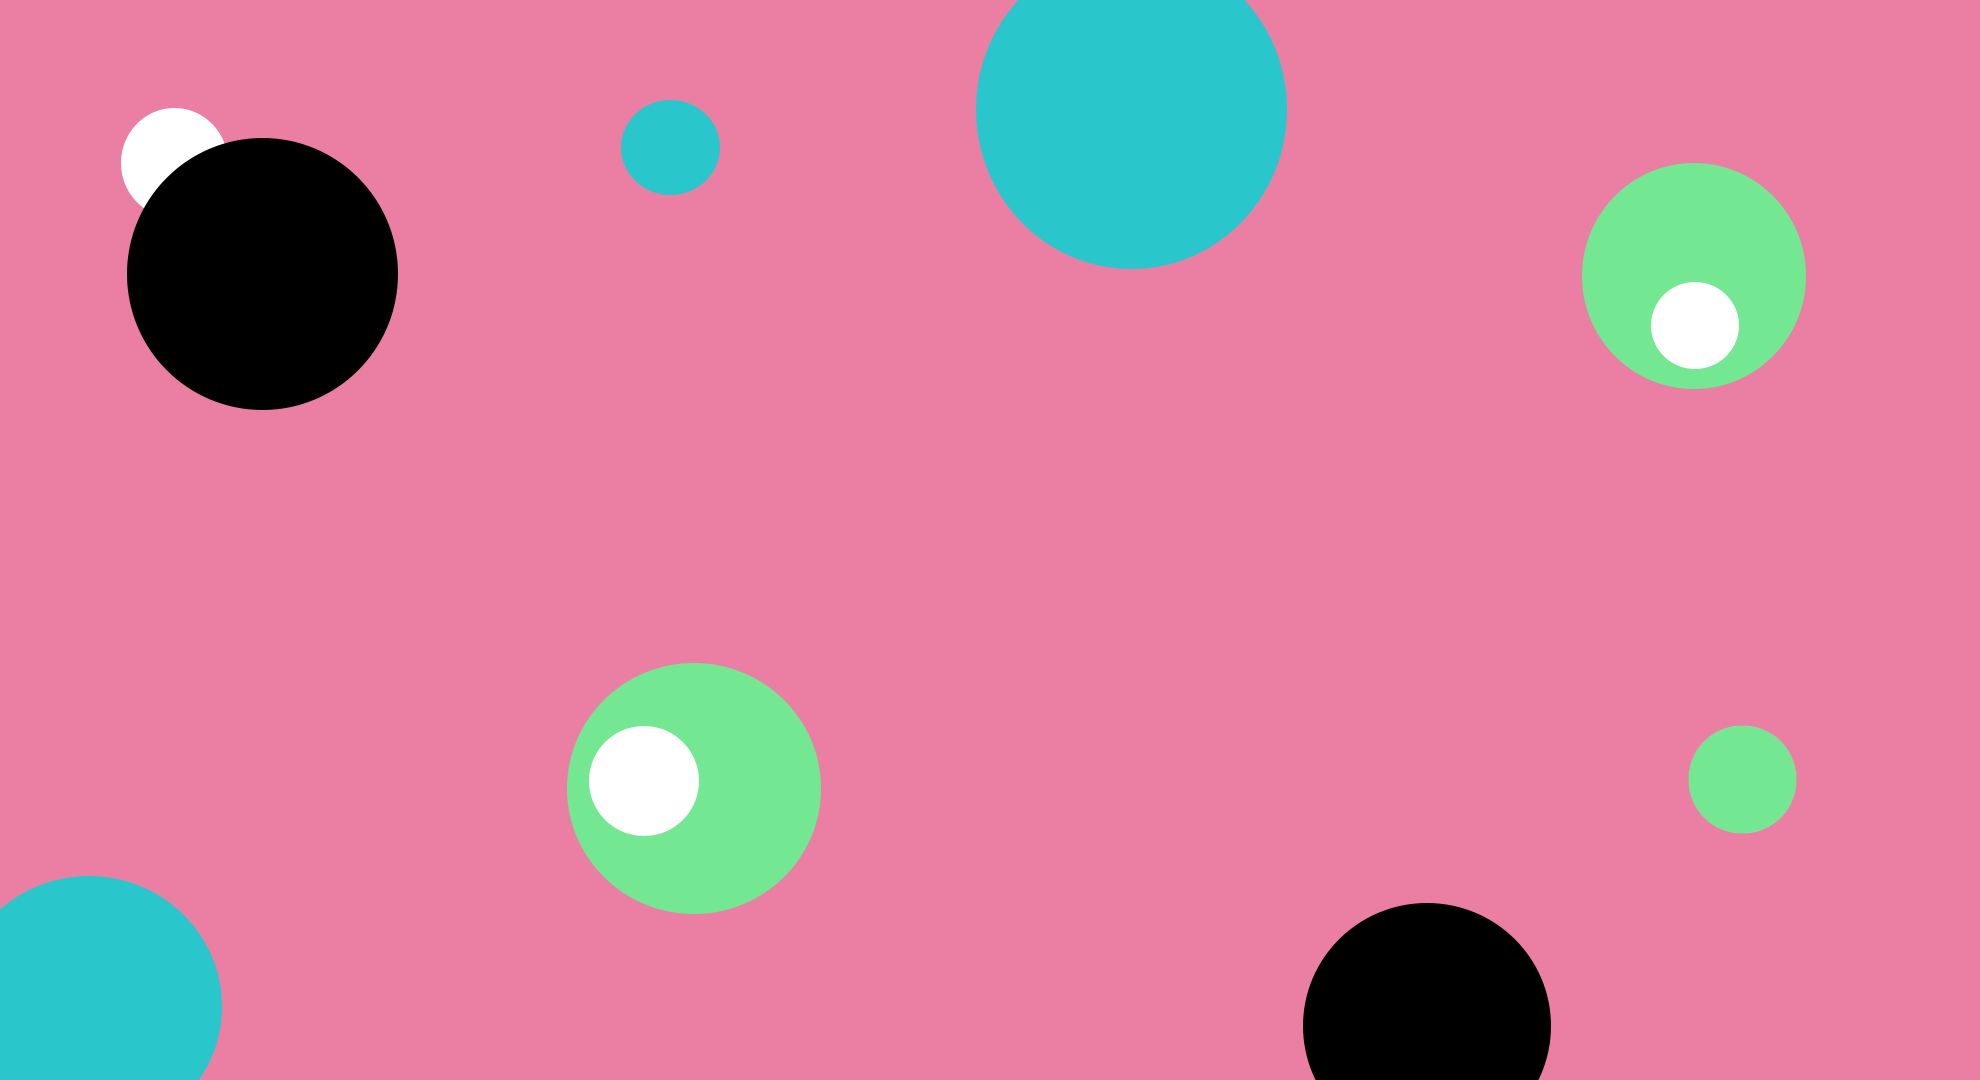 General 1980x1080 minimalism circle pink background